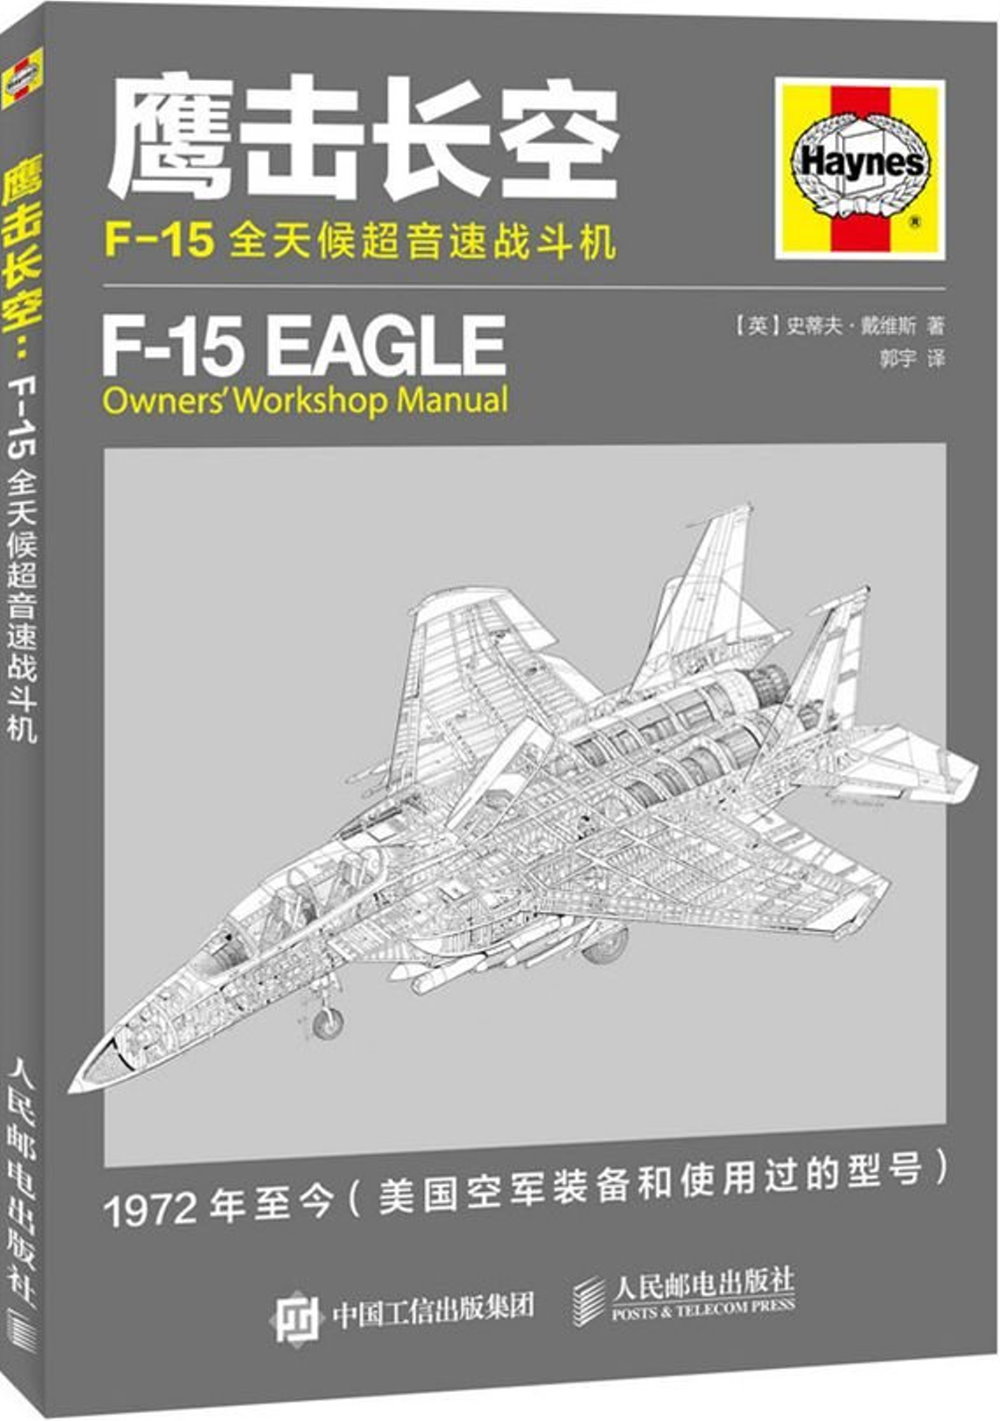 鷹擊長空:F-15全天候超音速戰斗機